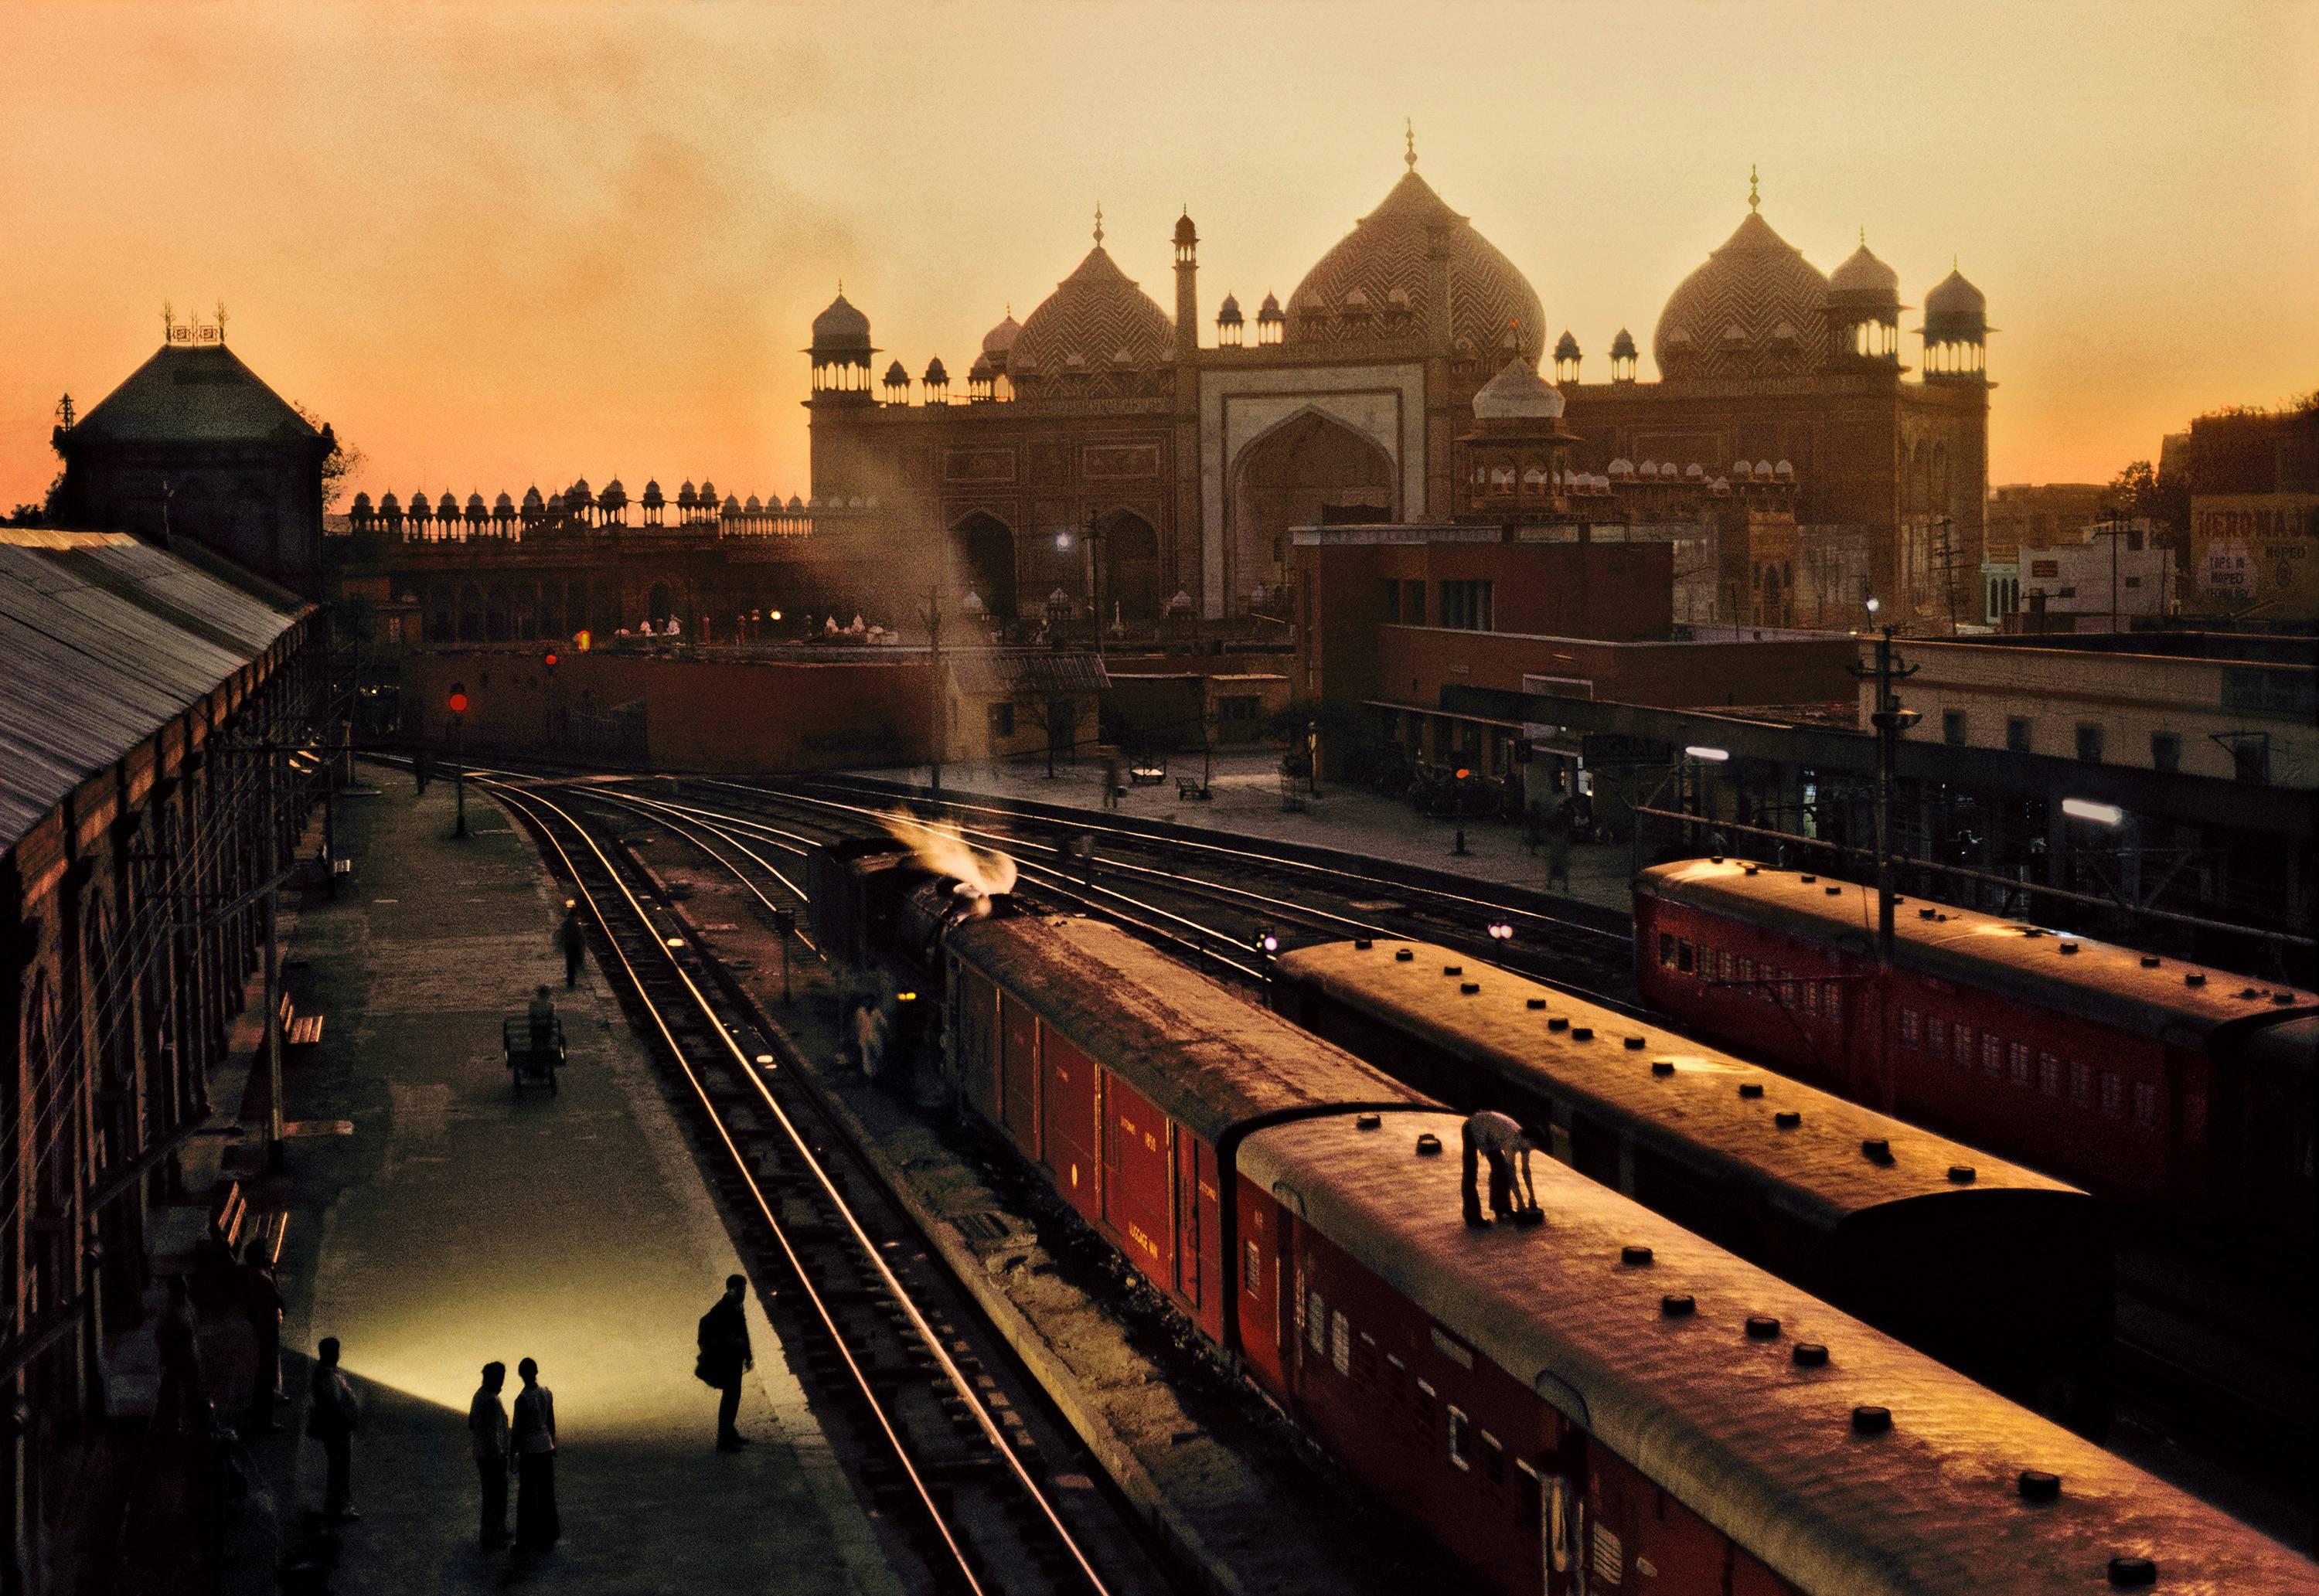 Train Station, Agra, Indien – Steve McCurry (Farbfotografie)
Signiert und nummeriert auf dem Label der Fotografenedition auf der Rückseite
Digitaler C-Typ-Druck, gedruckt 2014
20 x 24 Zoll
Von einer Auflage von 30

Auch in 2 größeren Größen